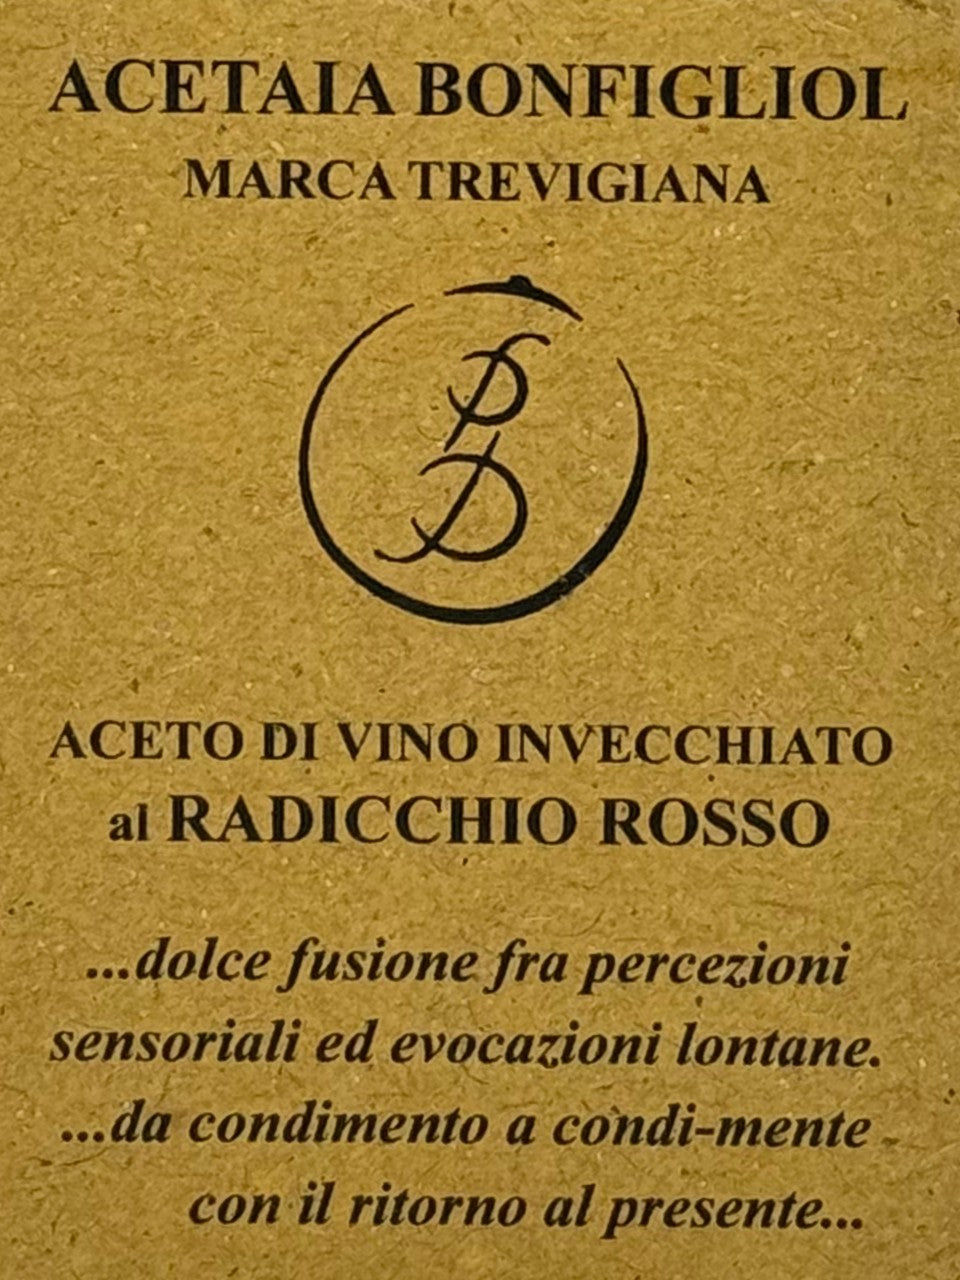 Aceto di vino invecchiato al Radicchio Rosso  -  Acetaia Bonfigliol - vaigustando